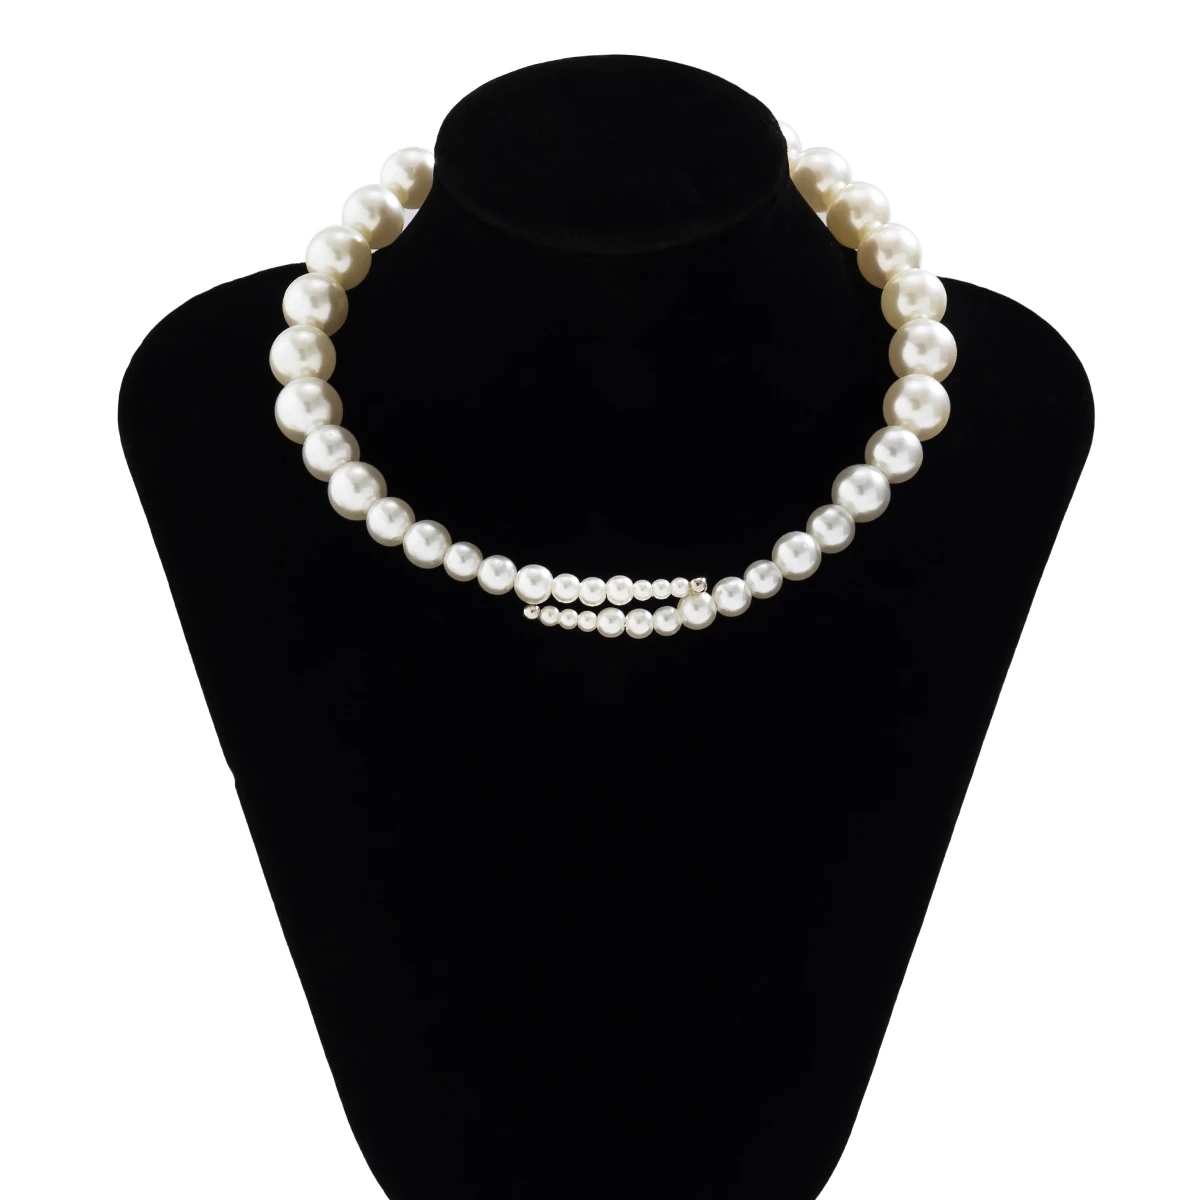 Collier ras du cou en perles simulées blanches à la mode pour femmes bijoux collier court cou ouvert chaîne fête de mariage cadeaux élégants